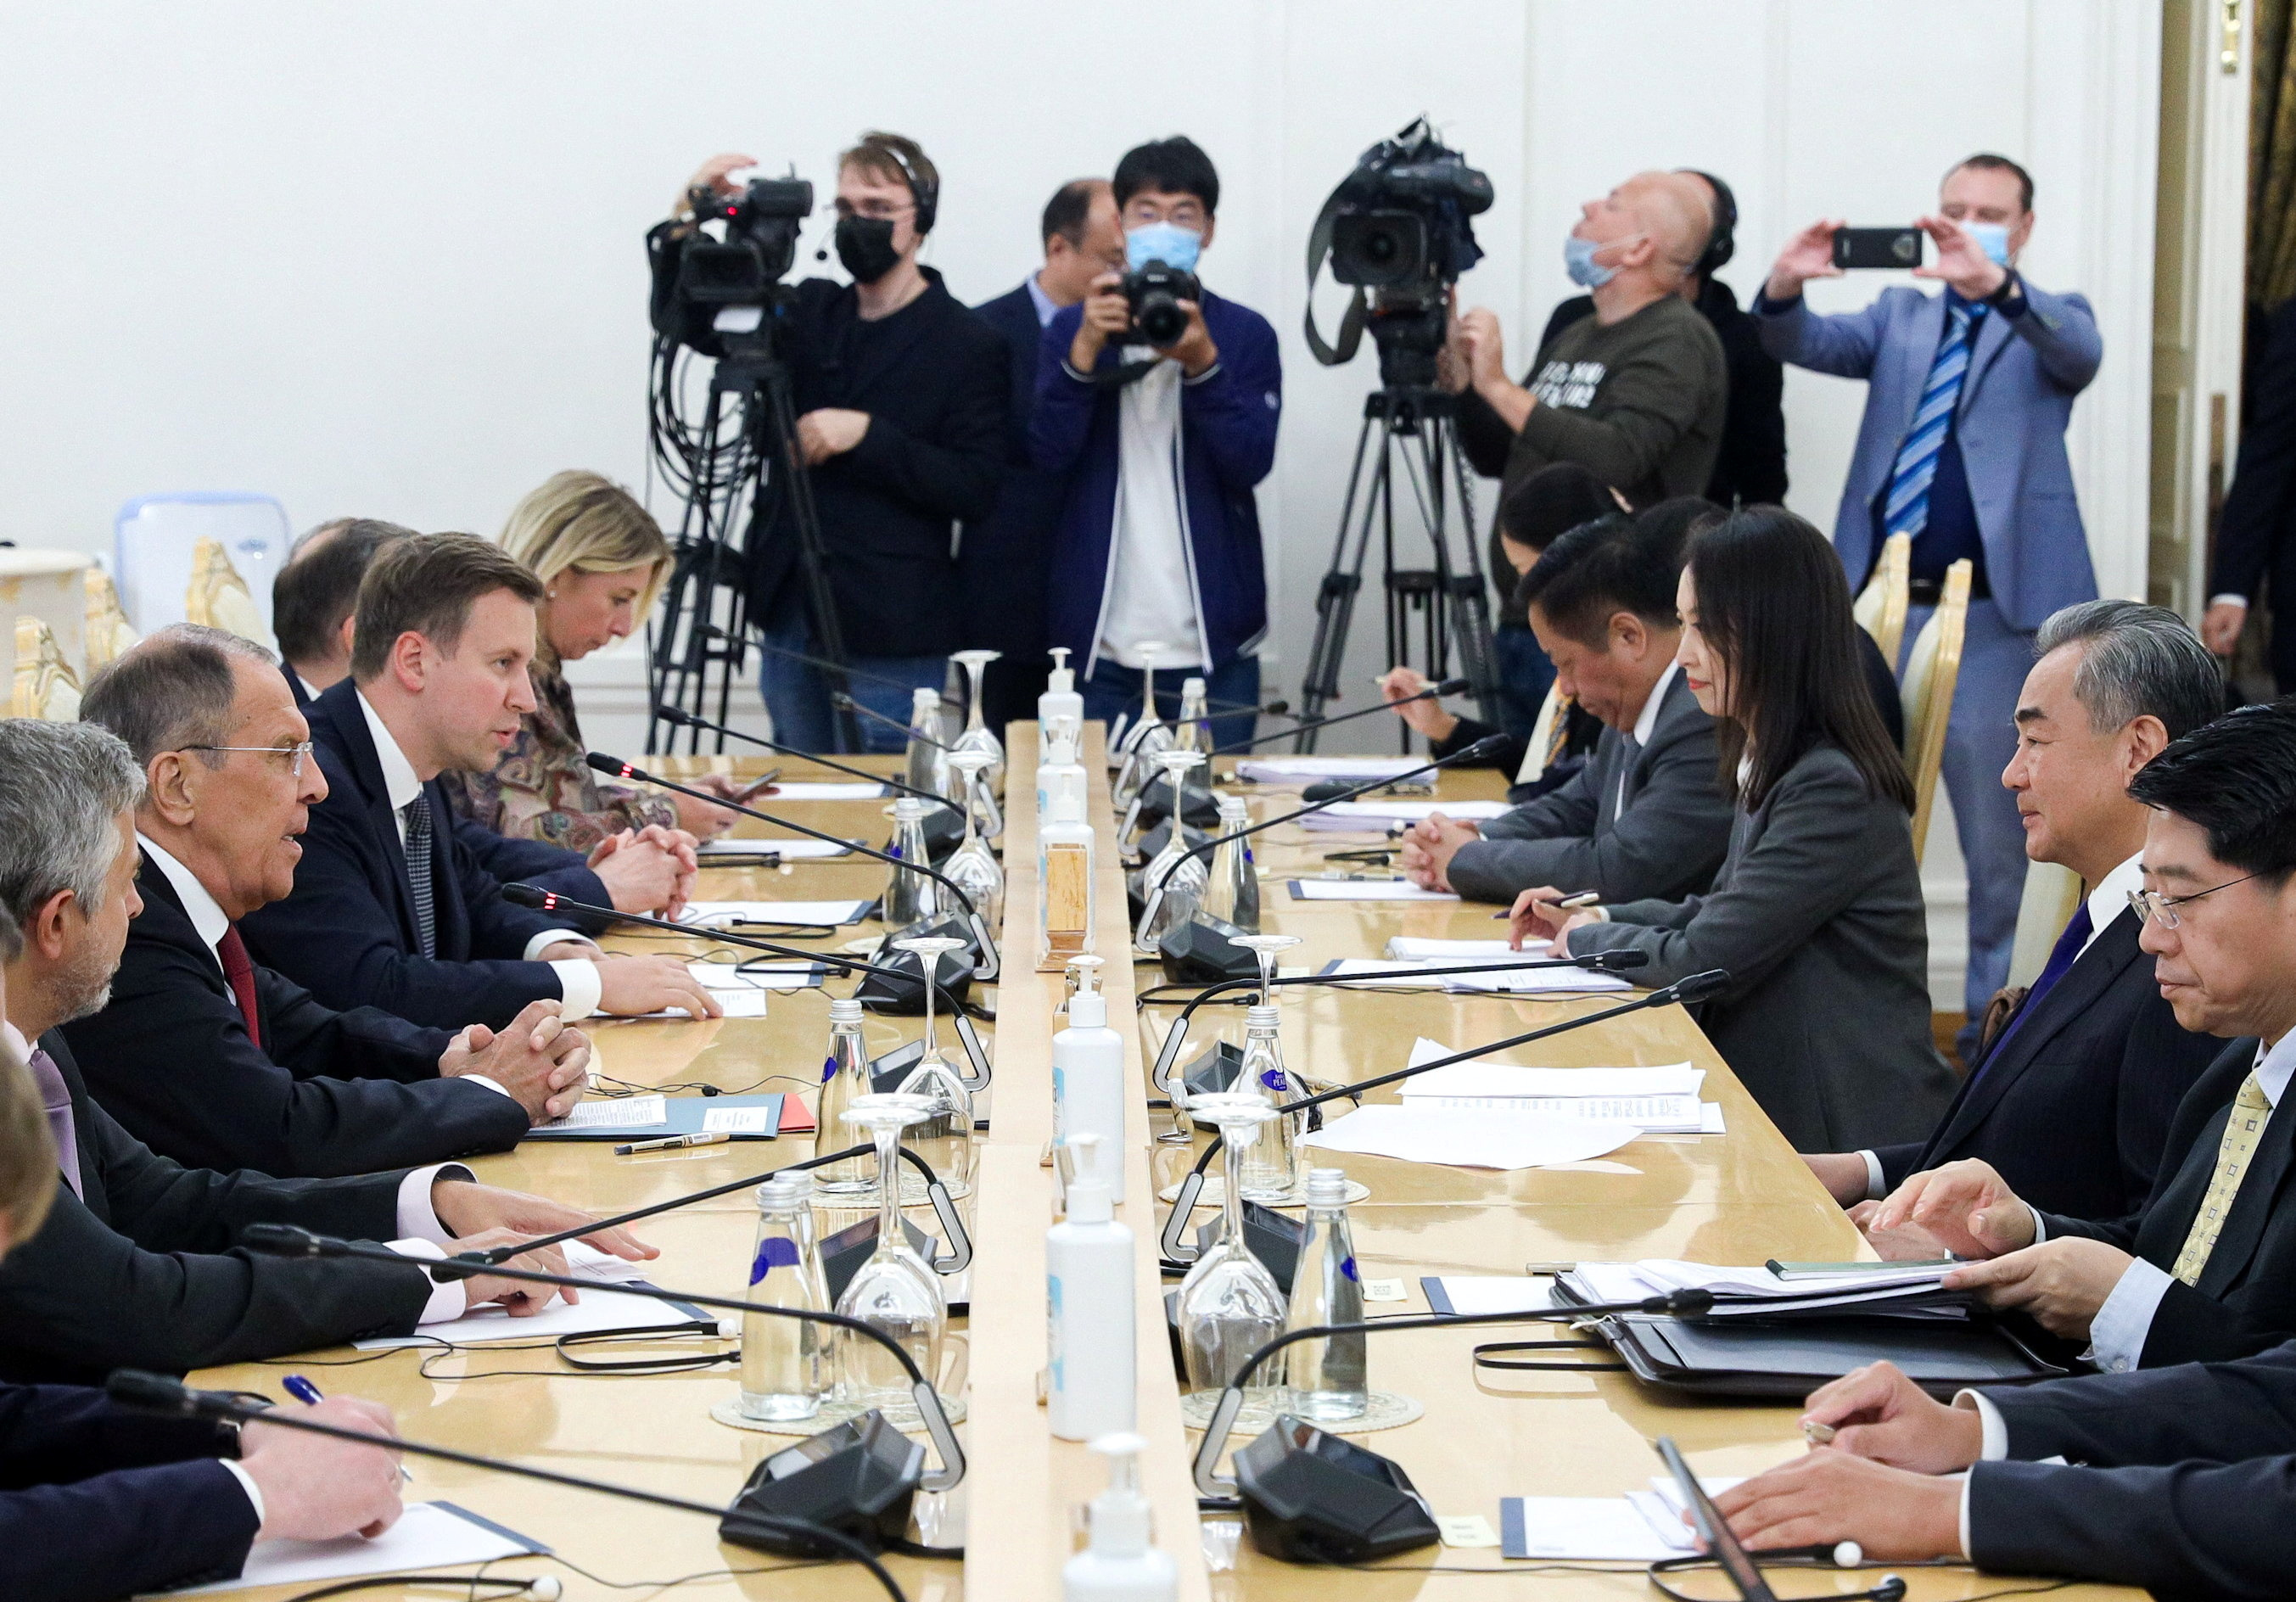 Η Κίνα και η Ρωσία «συγκλίνουν» στις απόψεις για τις ΗΠΑ και την Ουκρανία καθώς ο Γουάνγκ Γι επισκέπτεται τη Μόσχα